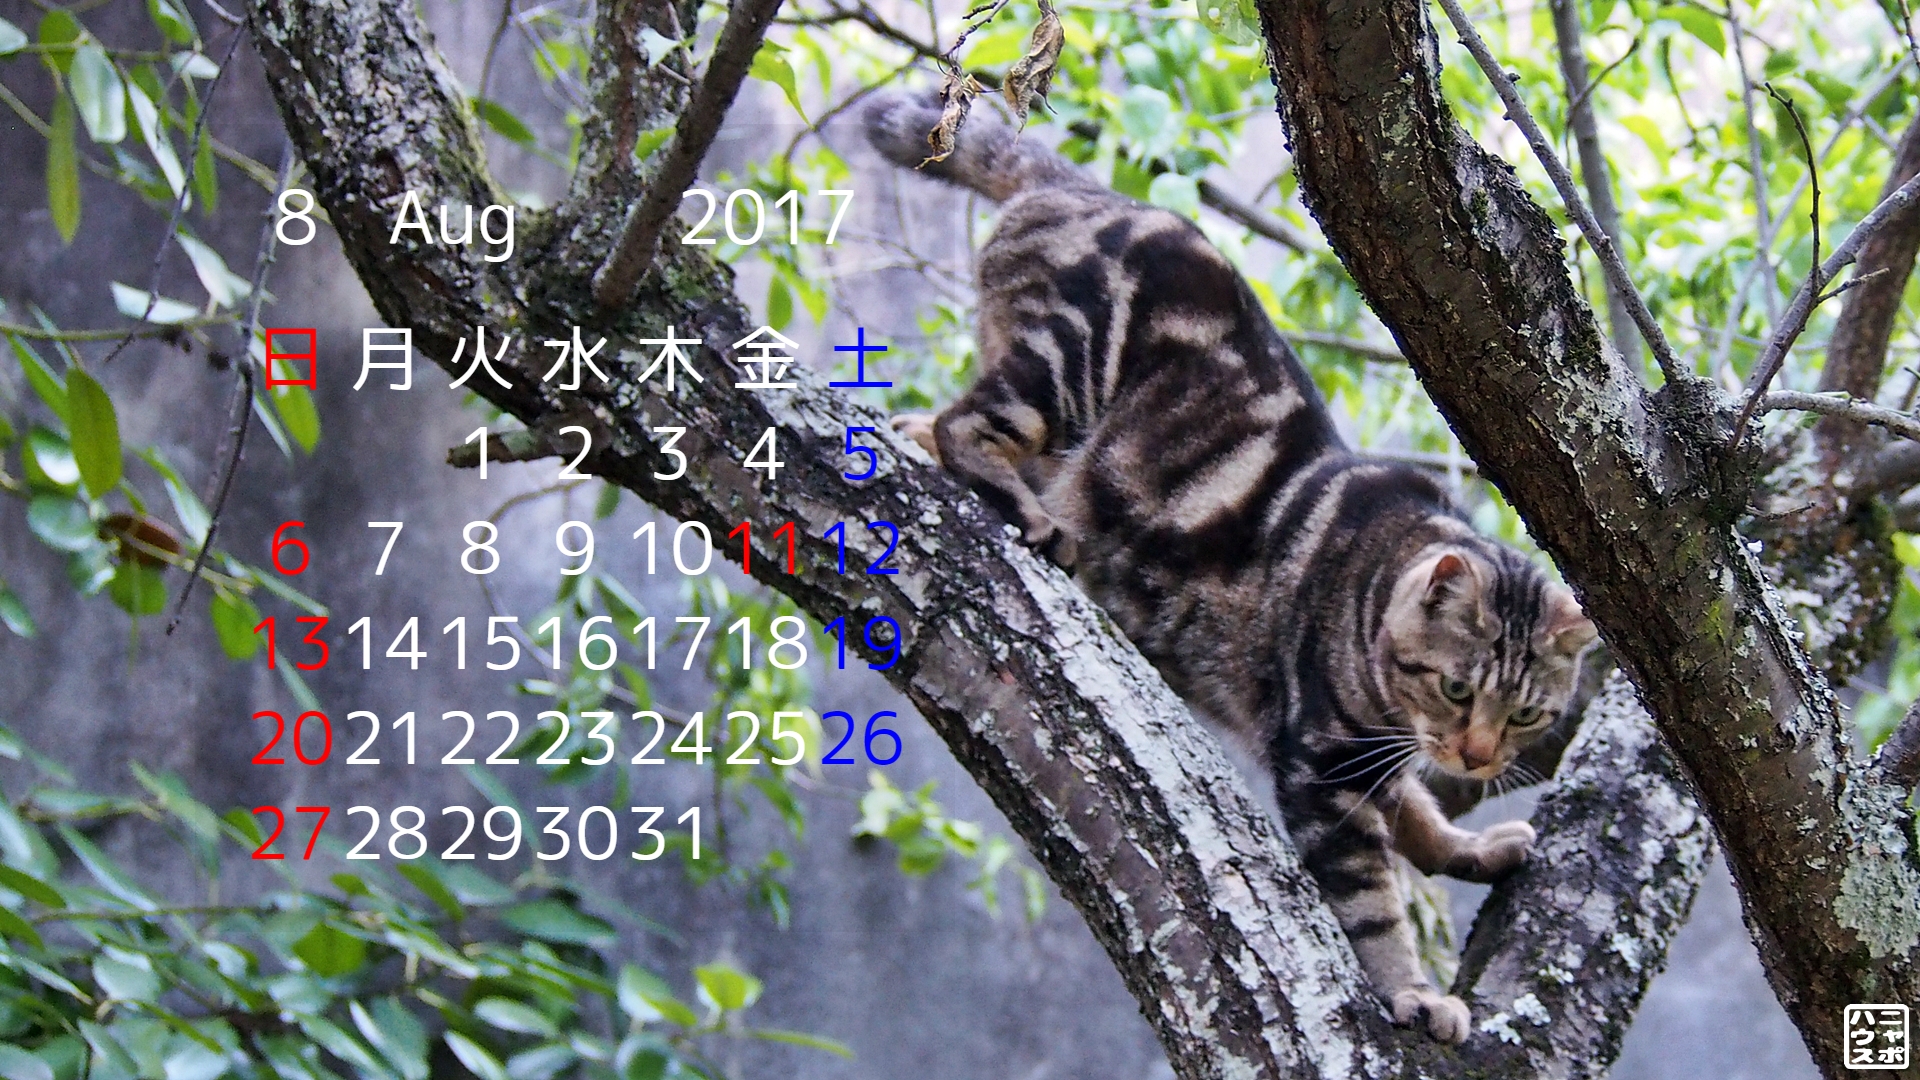 8月の 猫 デスクトップカレンダー 自慢の木登りアメショ猫さん ニャポハウス